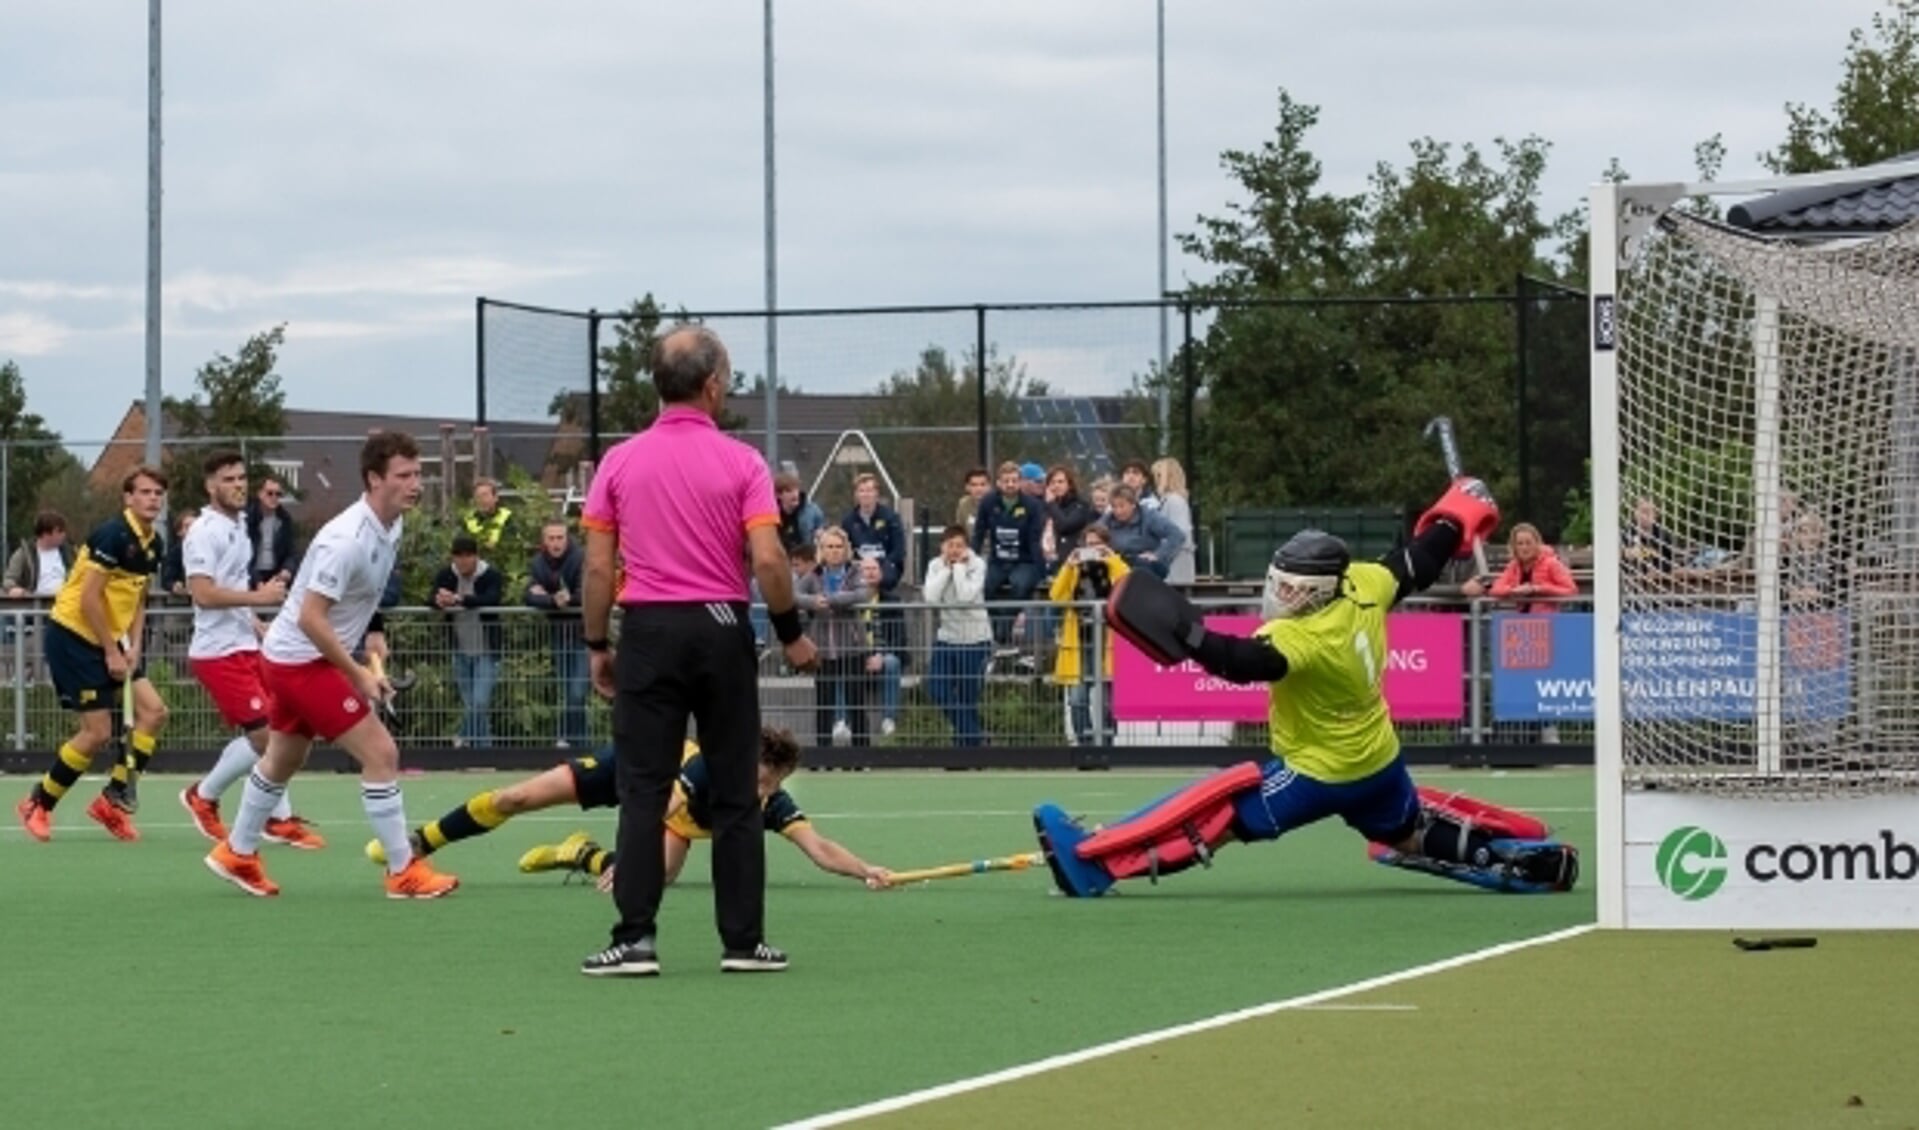 Oscar van den Hul links op de foto heeft effectief uitgehaald, de tip-in van Daan van Dijk is niet meer nodig: 2-0 (Foto: Erik van Dort)